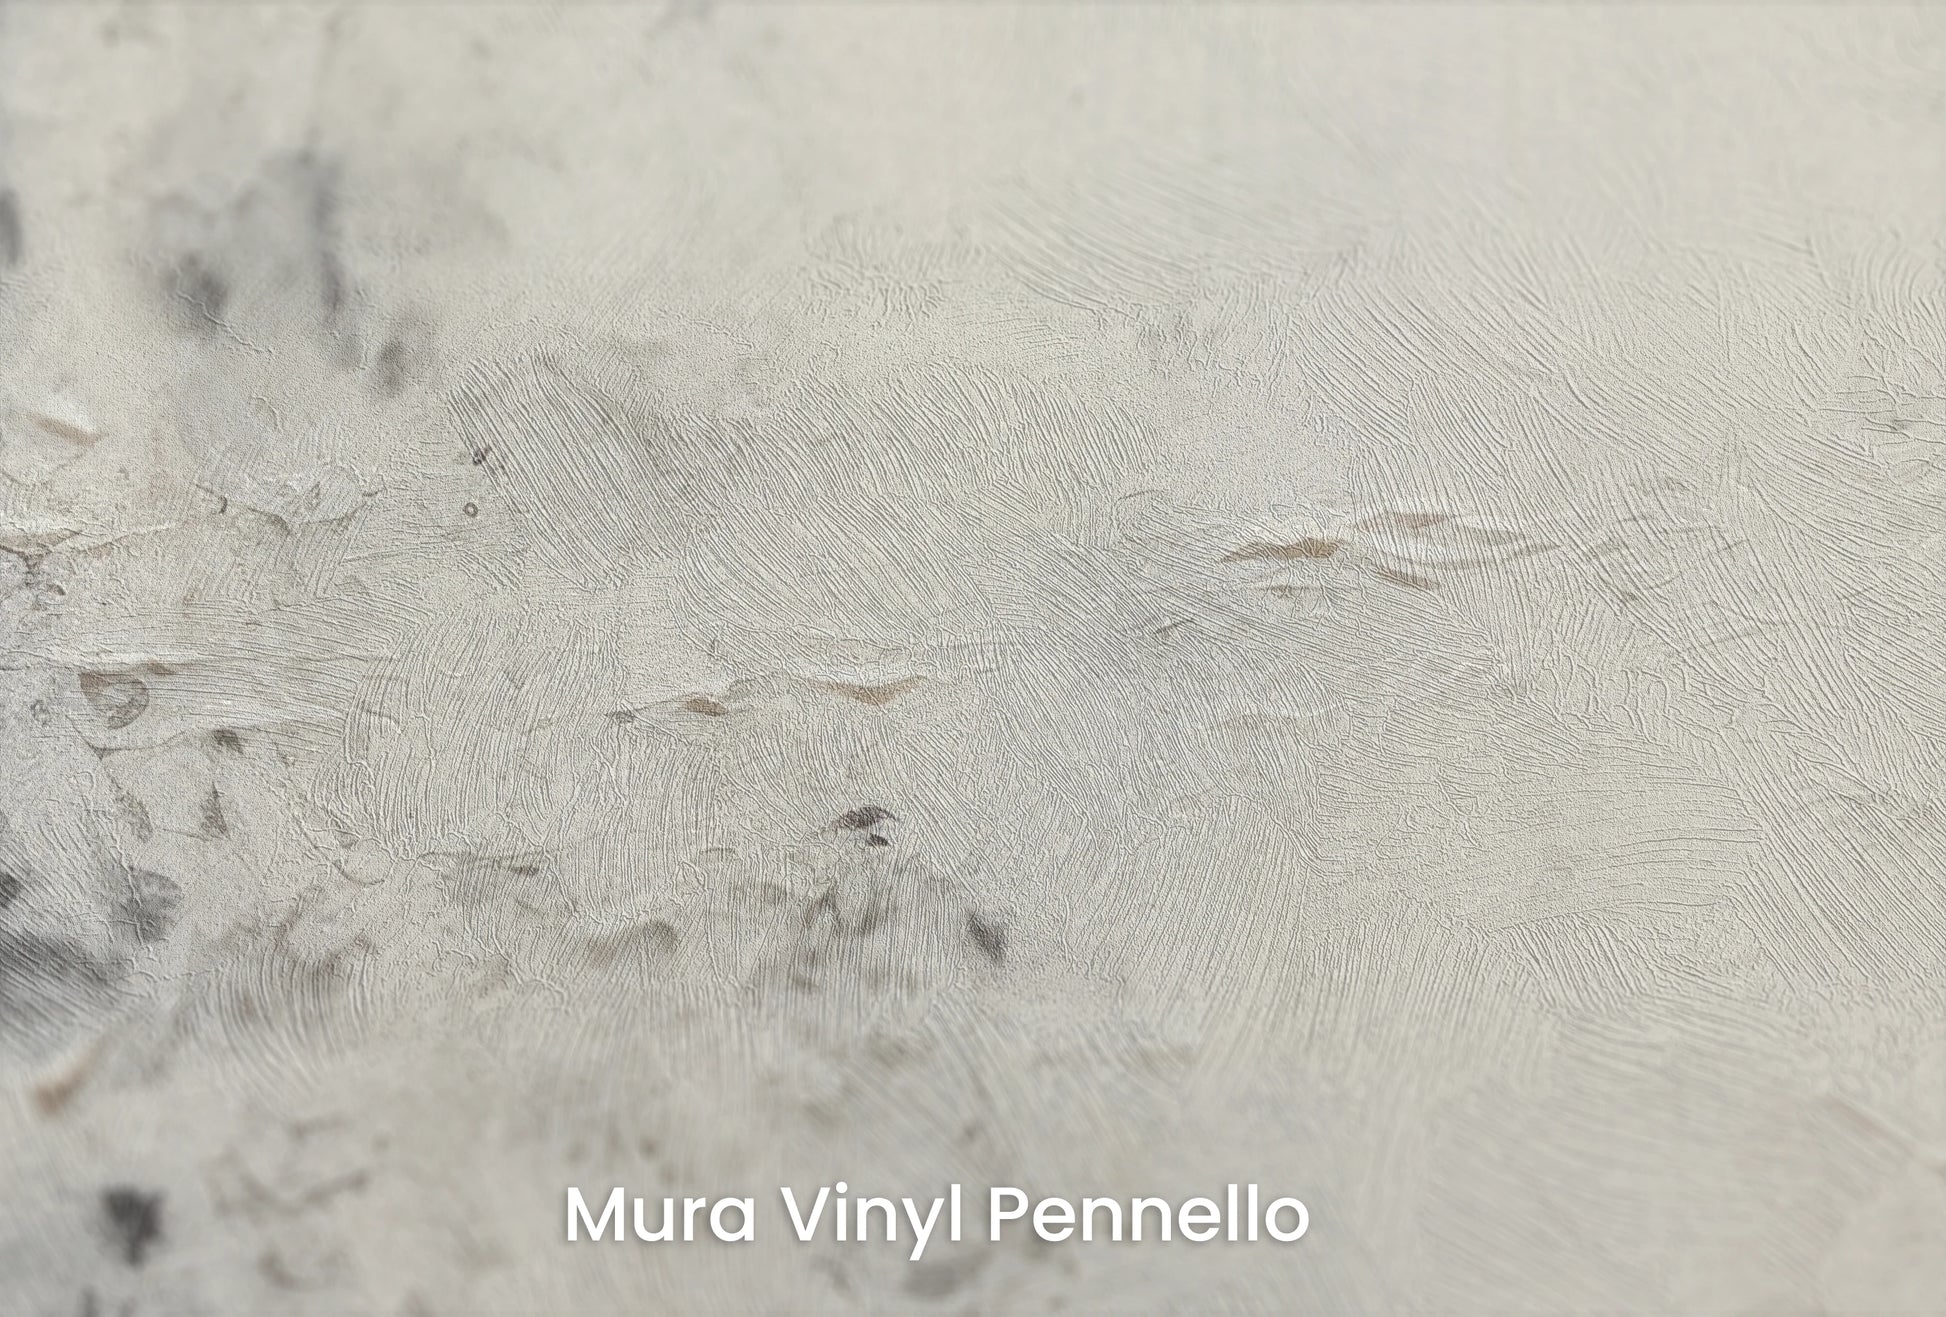 Zbliżenie na artystyczną fototapetę o nazwie Jupiter's Watch na podłożu Mura Vinyl Pennello - faktura pociągnięć pędzla malarskiego.